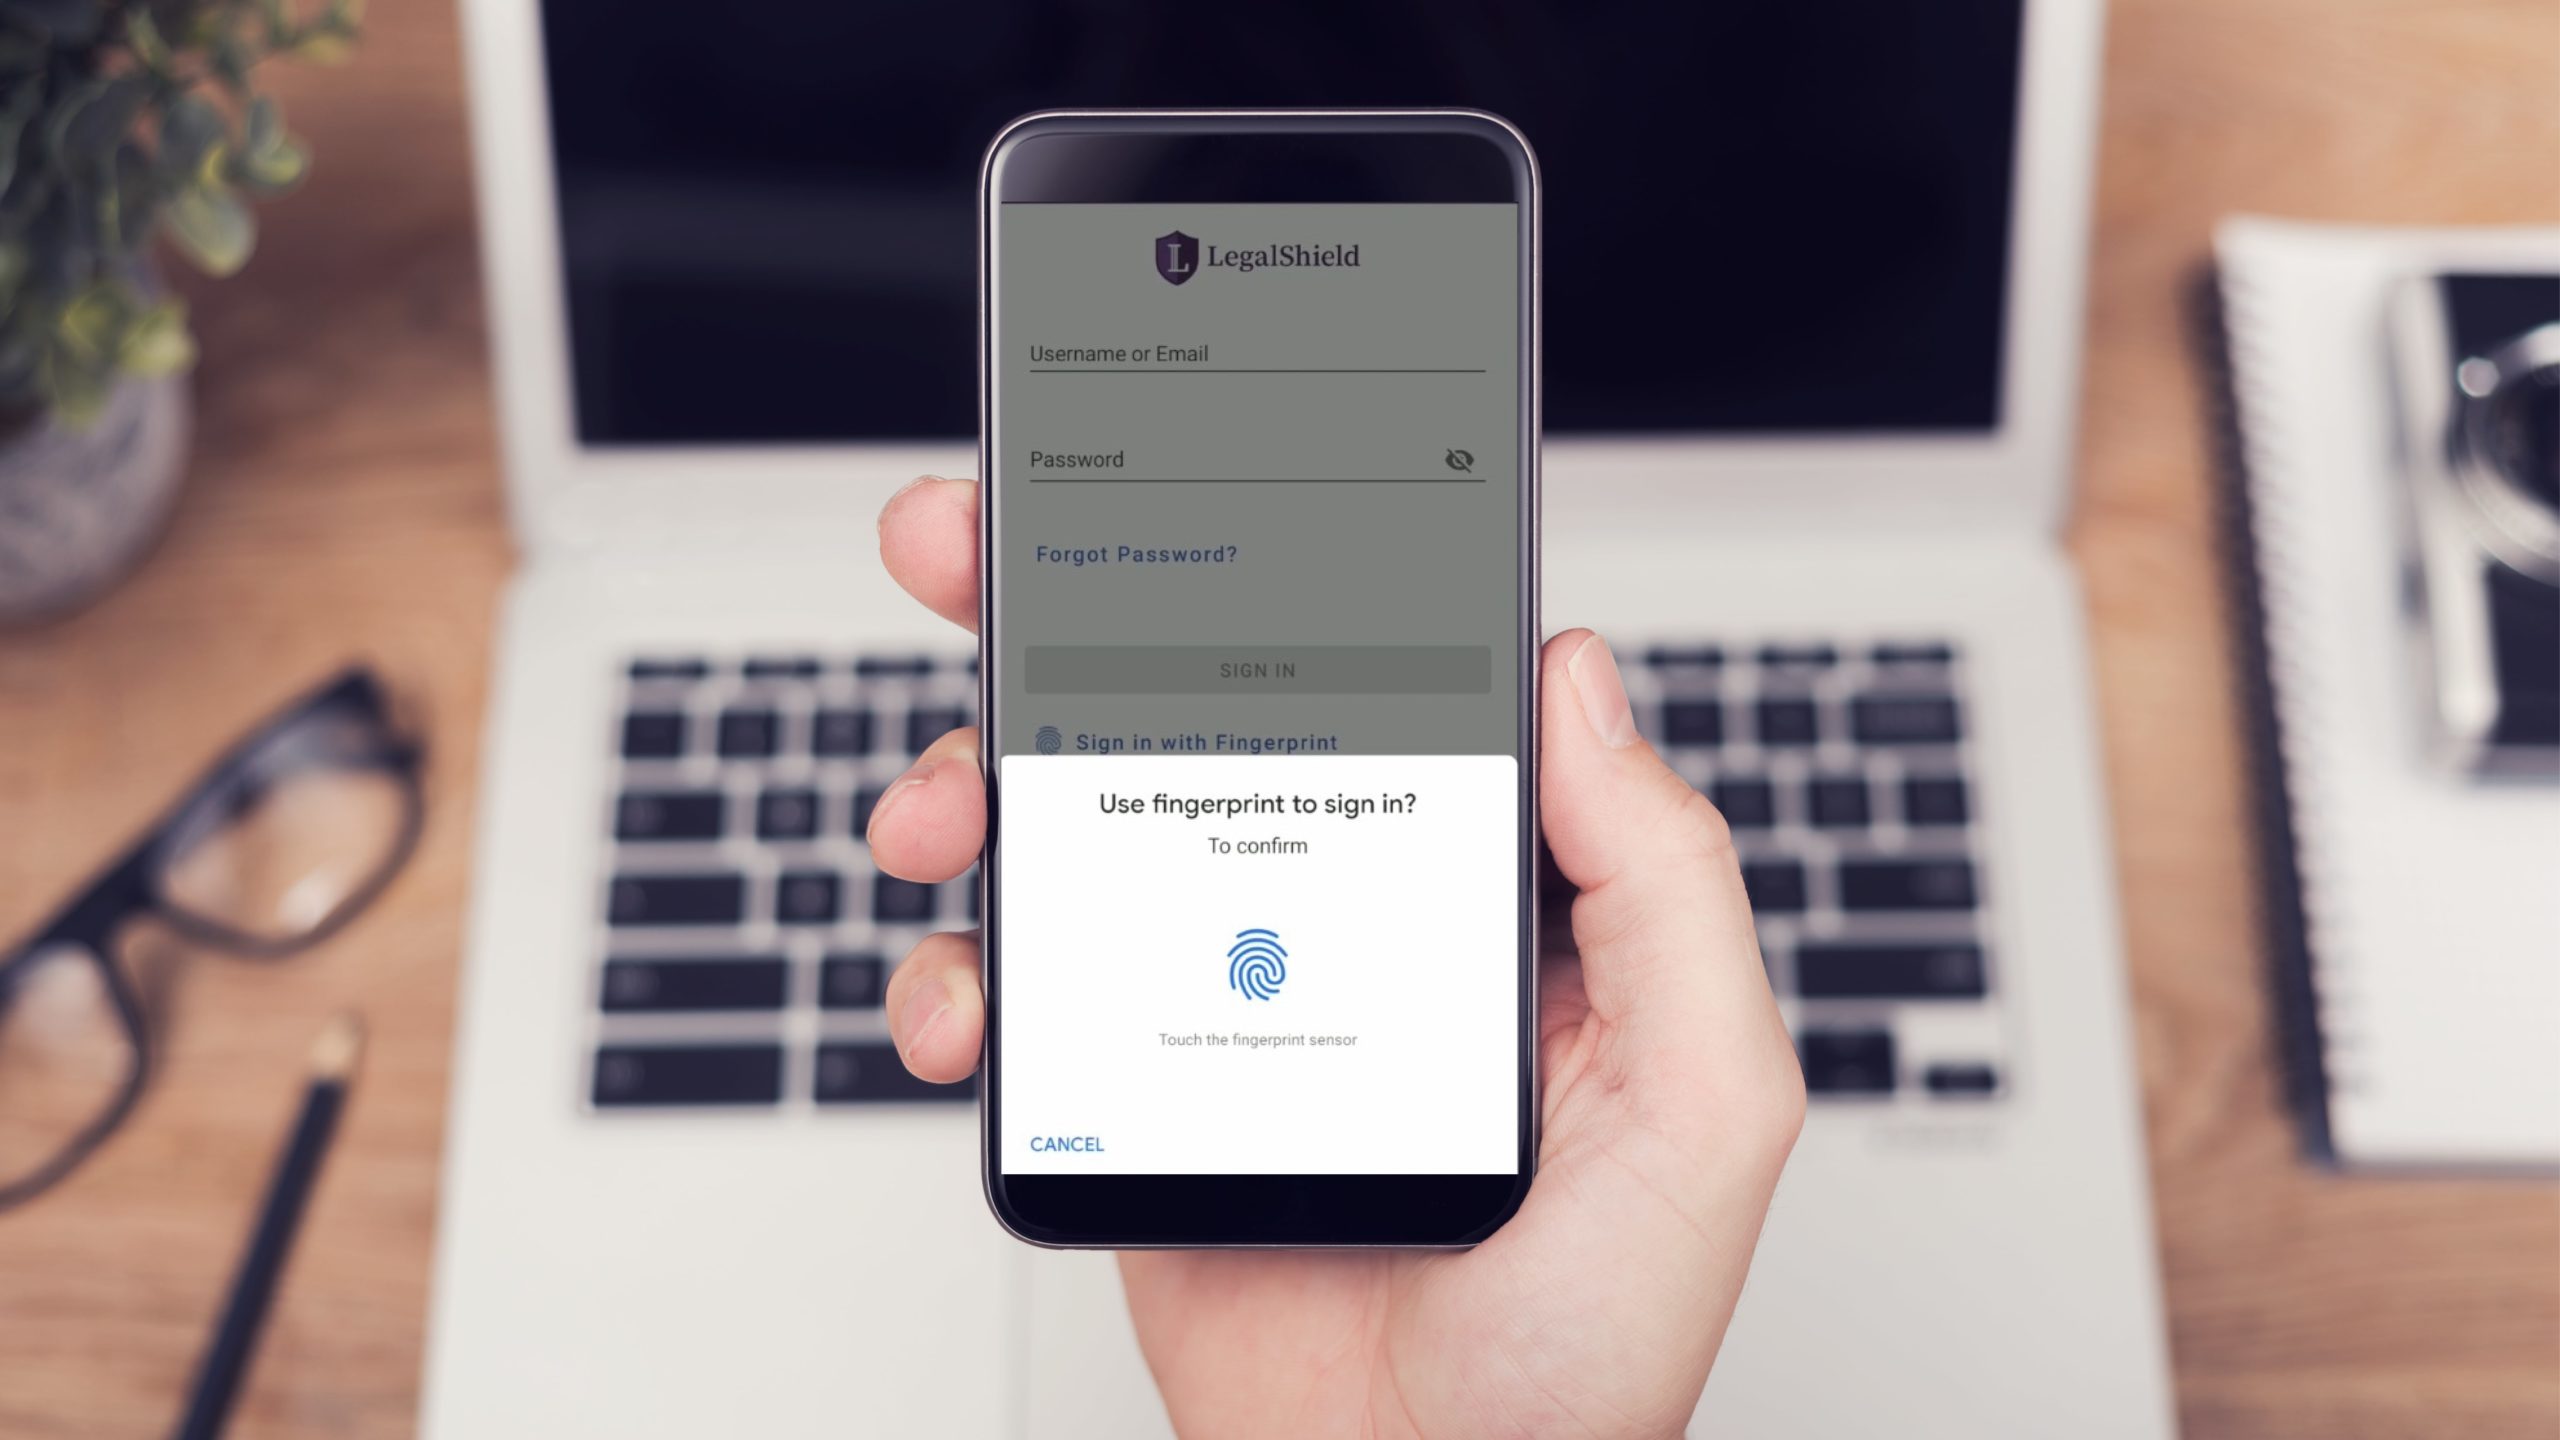 LegalShield mobile app biometric fingerprint login shown on smartphone